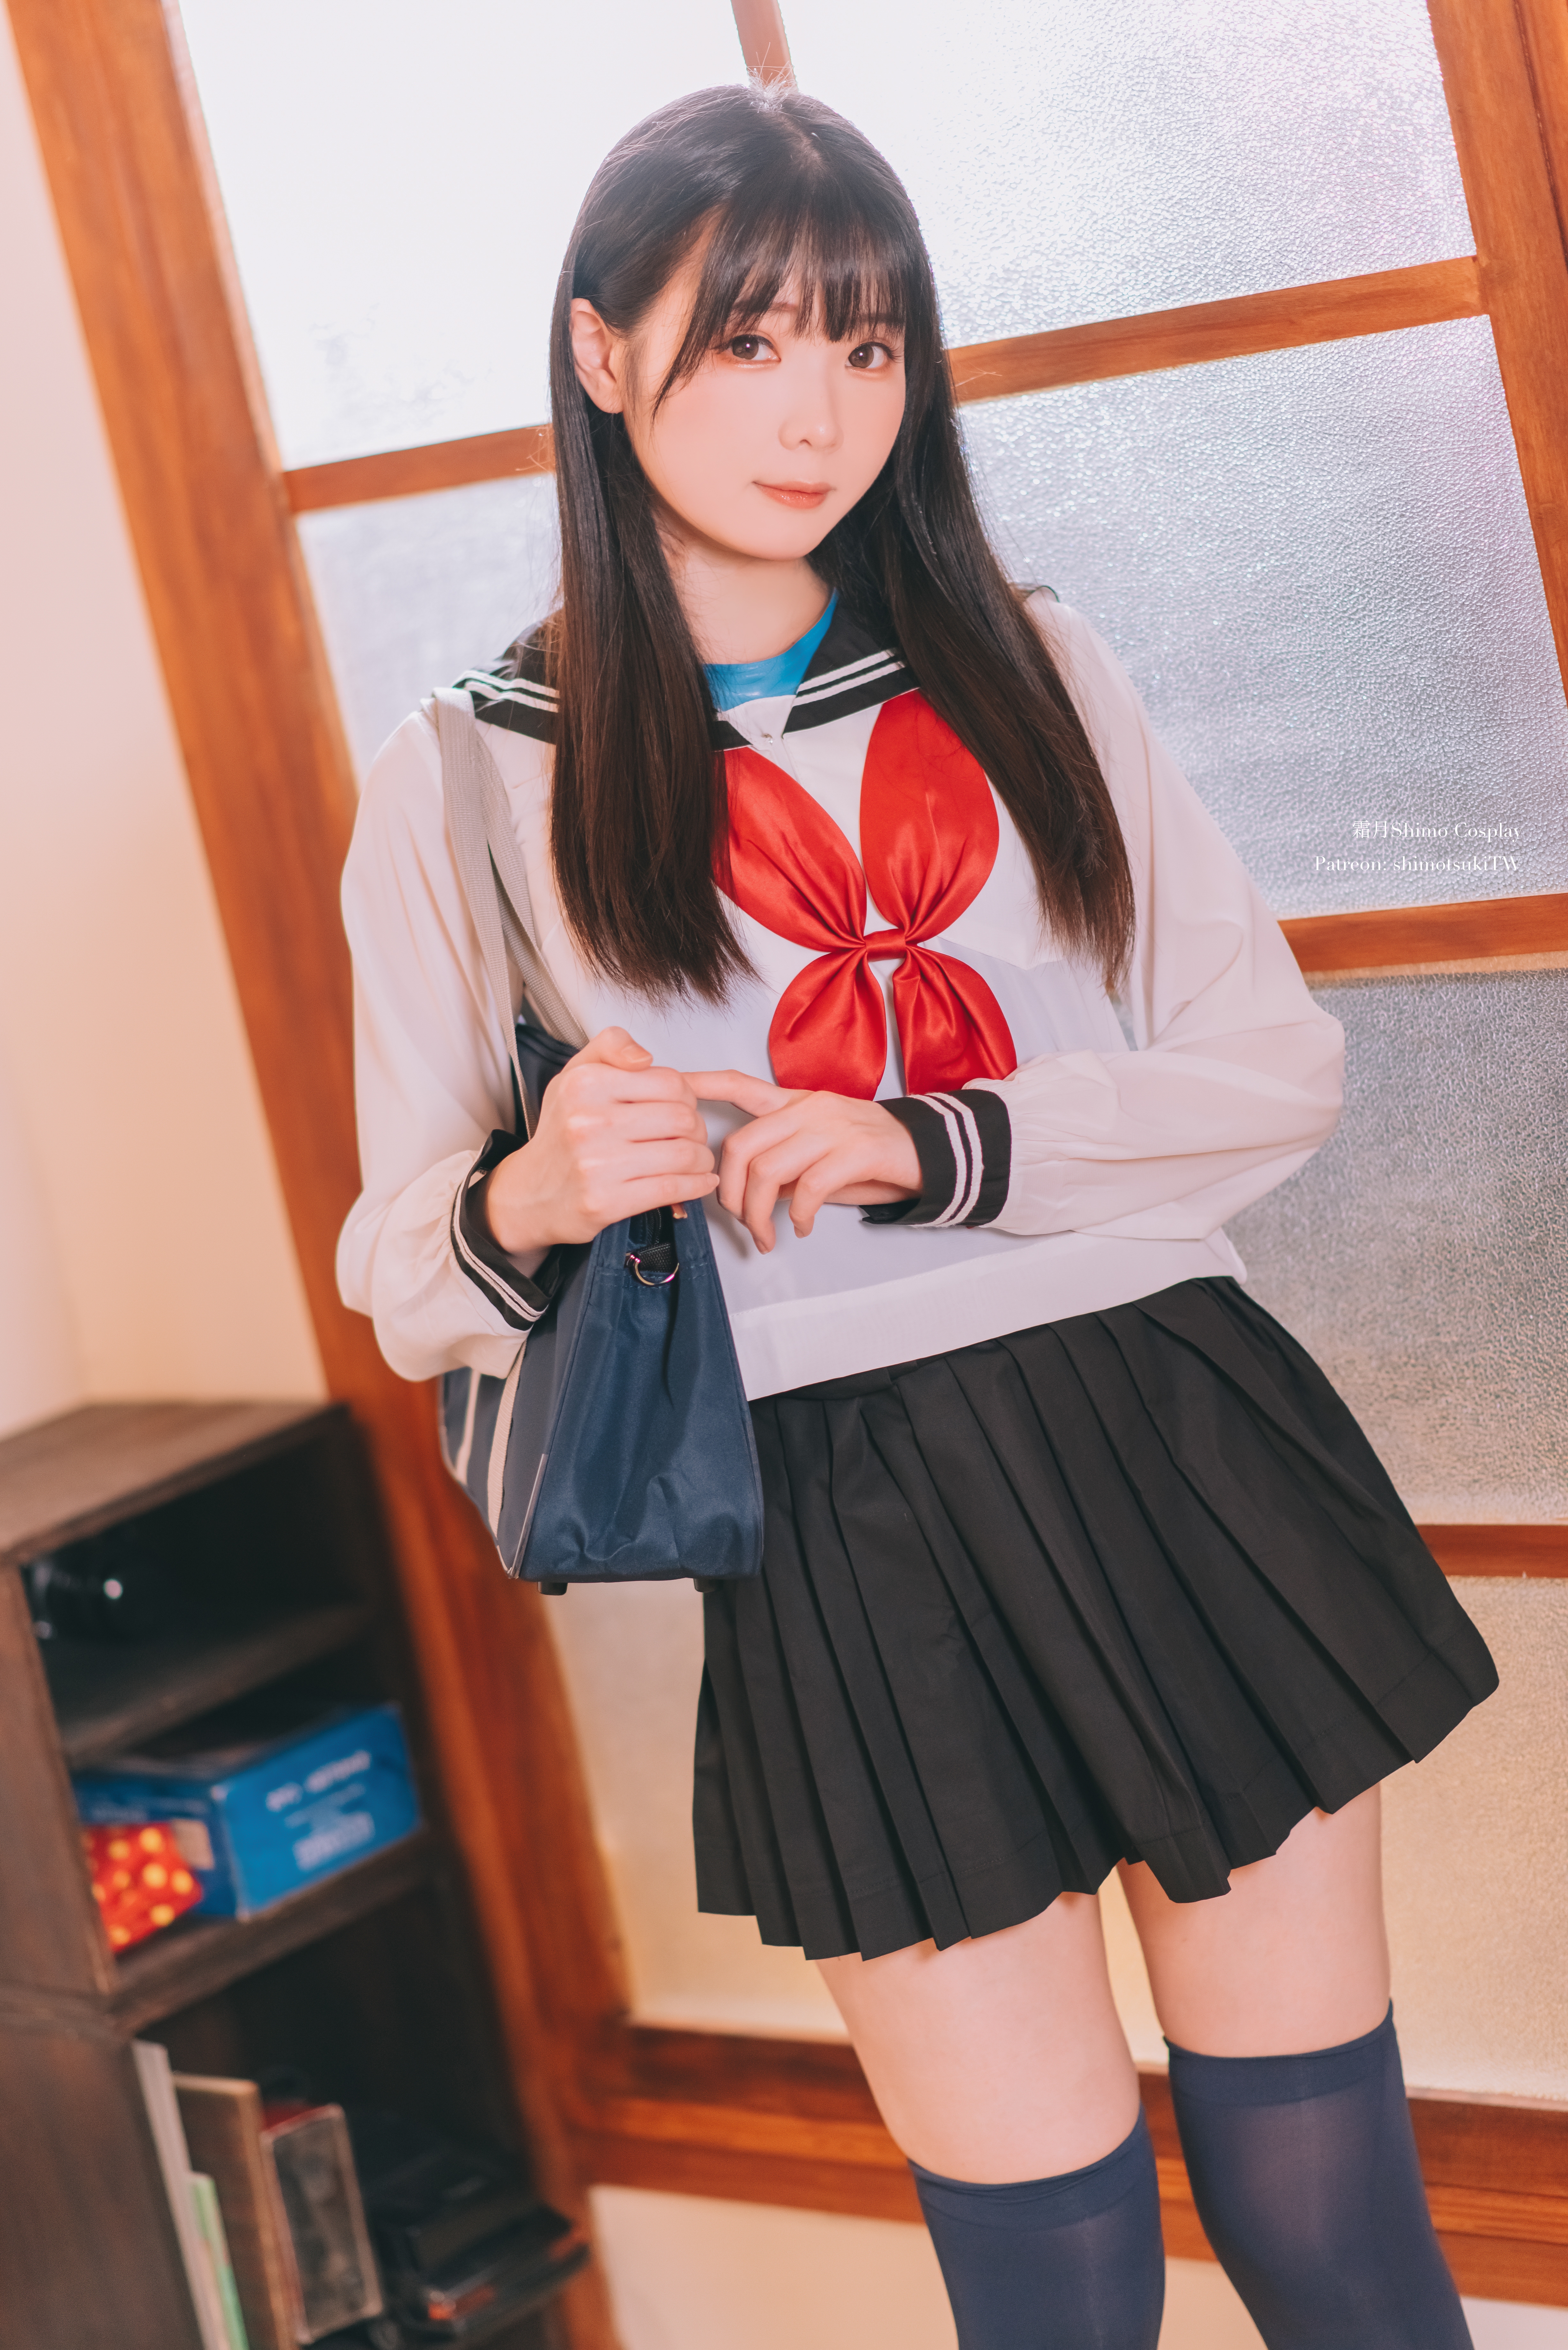 Women Model Asian Cosplay Women Indoors Schoolgirl Sailor Uniform 4912x7360